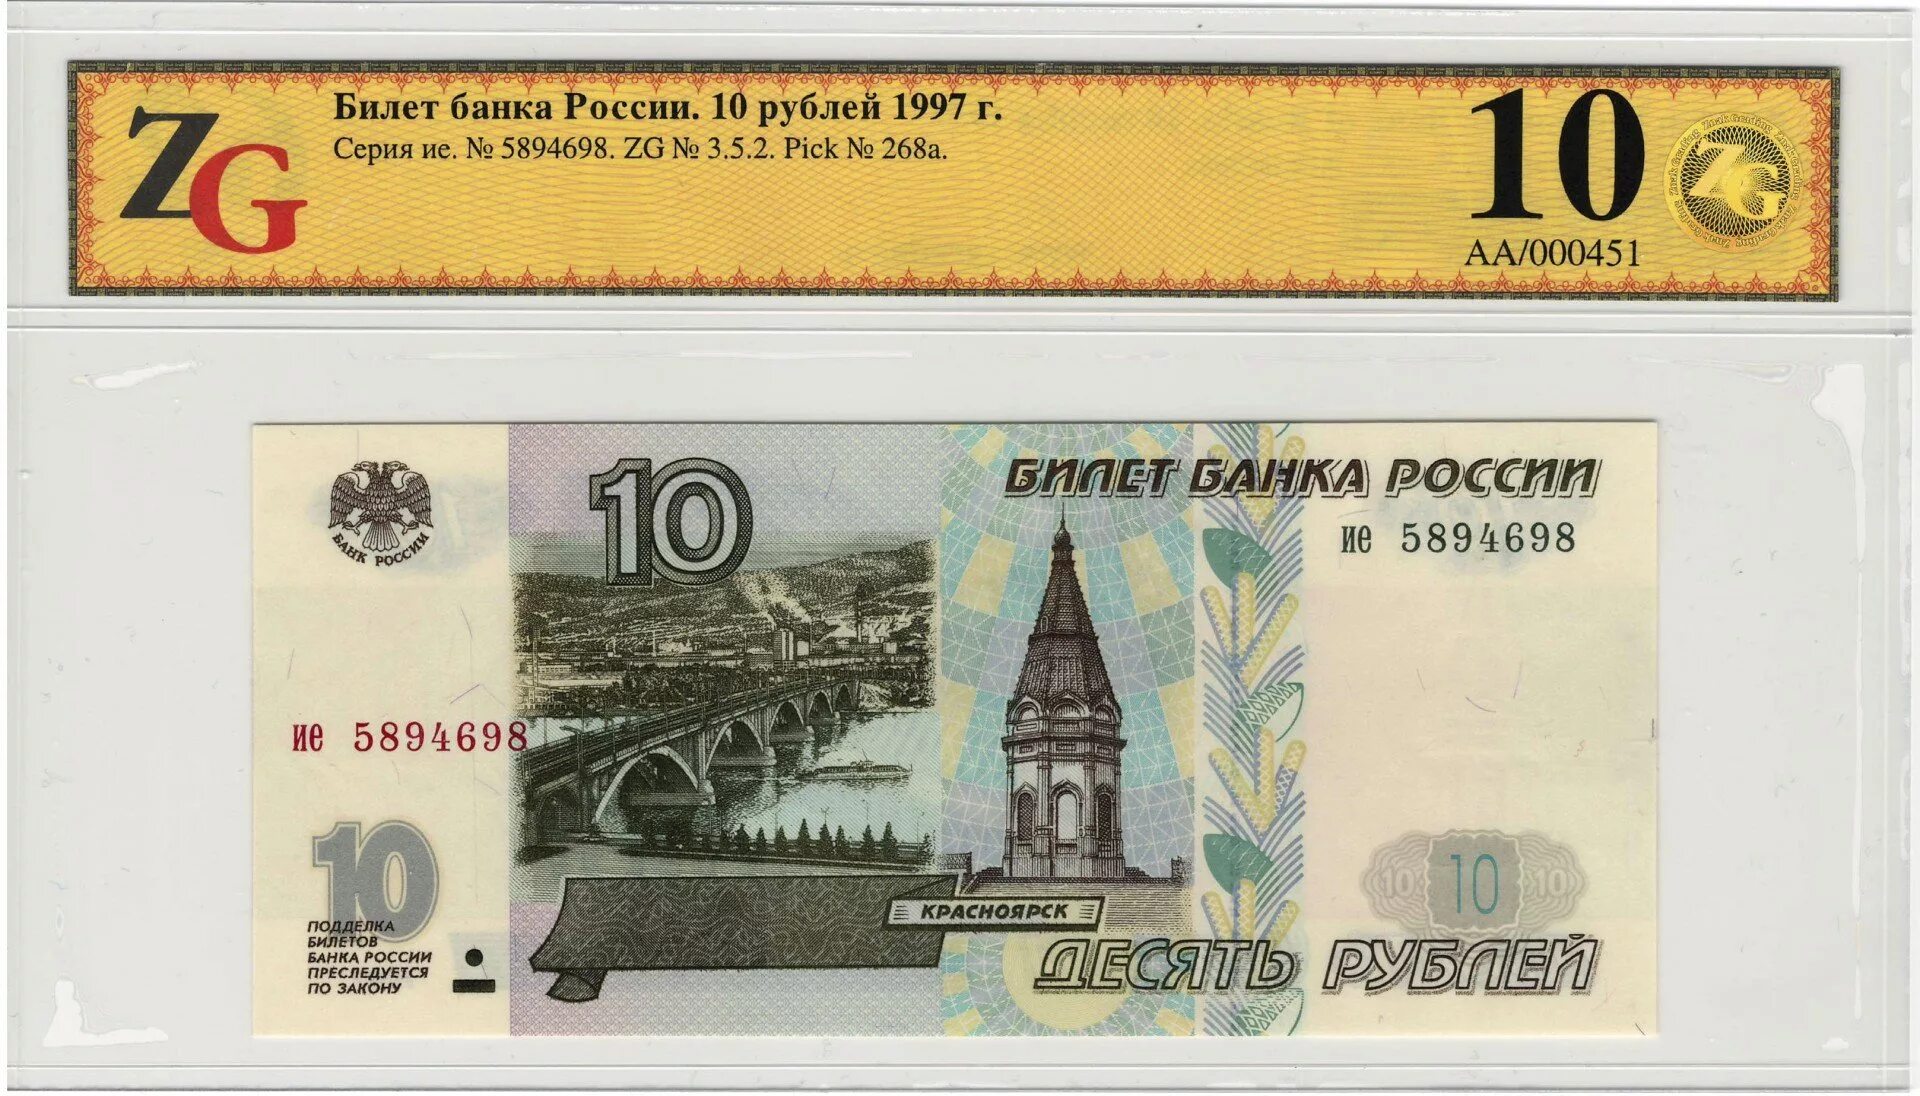 10 Рублей 1997 модификация 2004. Банкноты банка России 1995 года. 10 Рублей купюра. Бумажная купюра 10 рублей.